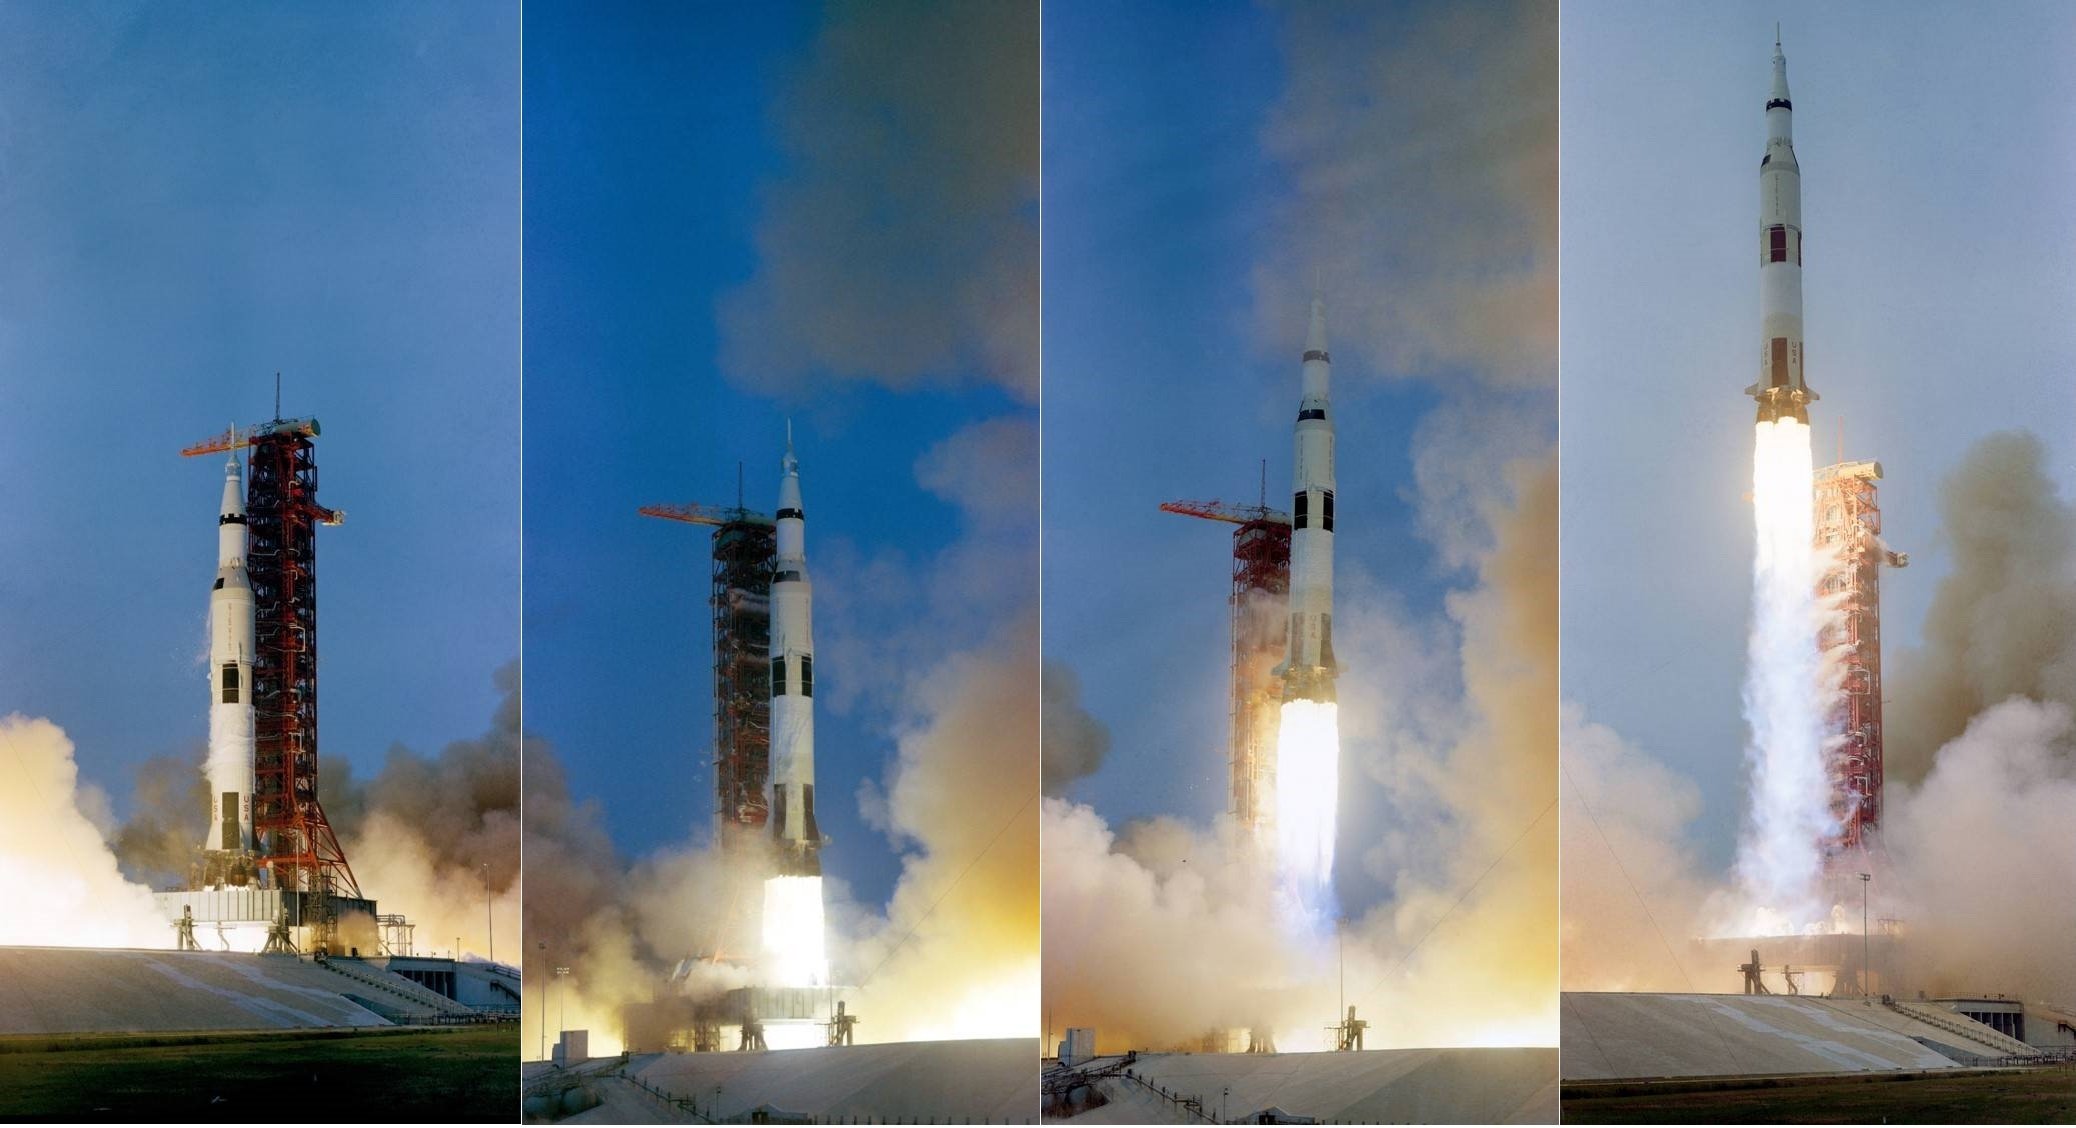 Sequência de lançamento do foguete Saturno V, levando a bordo os astronautas da missão Apollo 13.